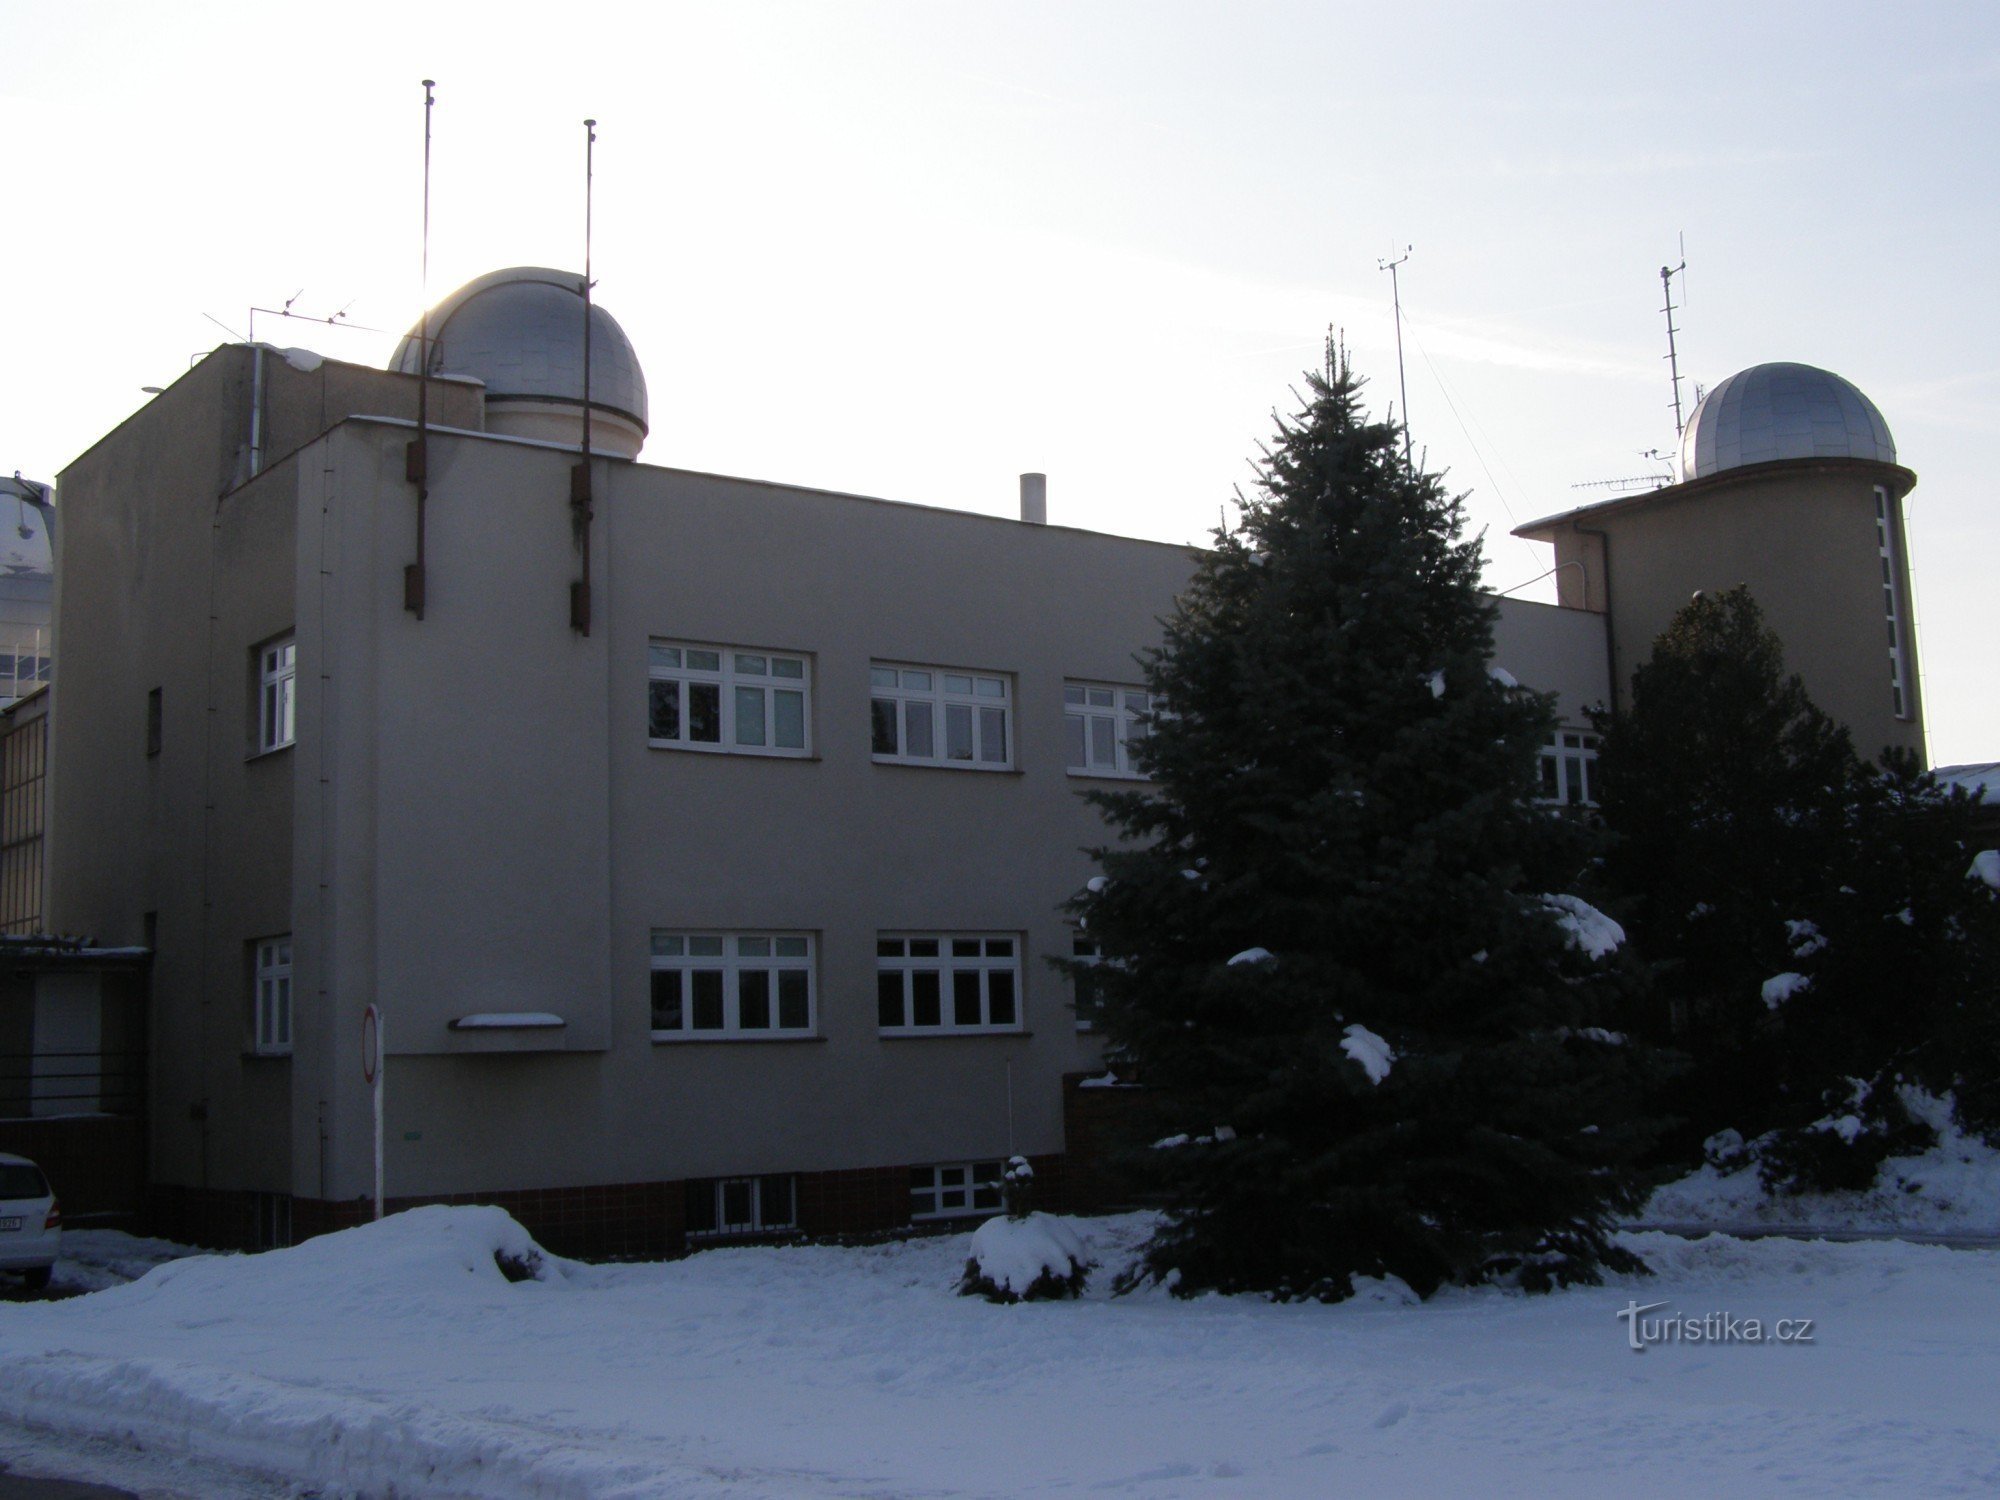 Hradec Králové - observatorium og planetarium